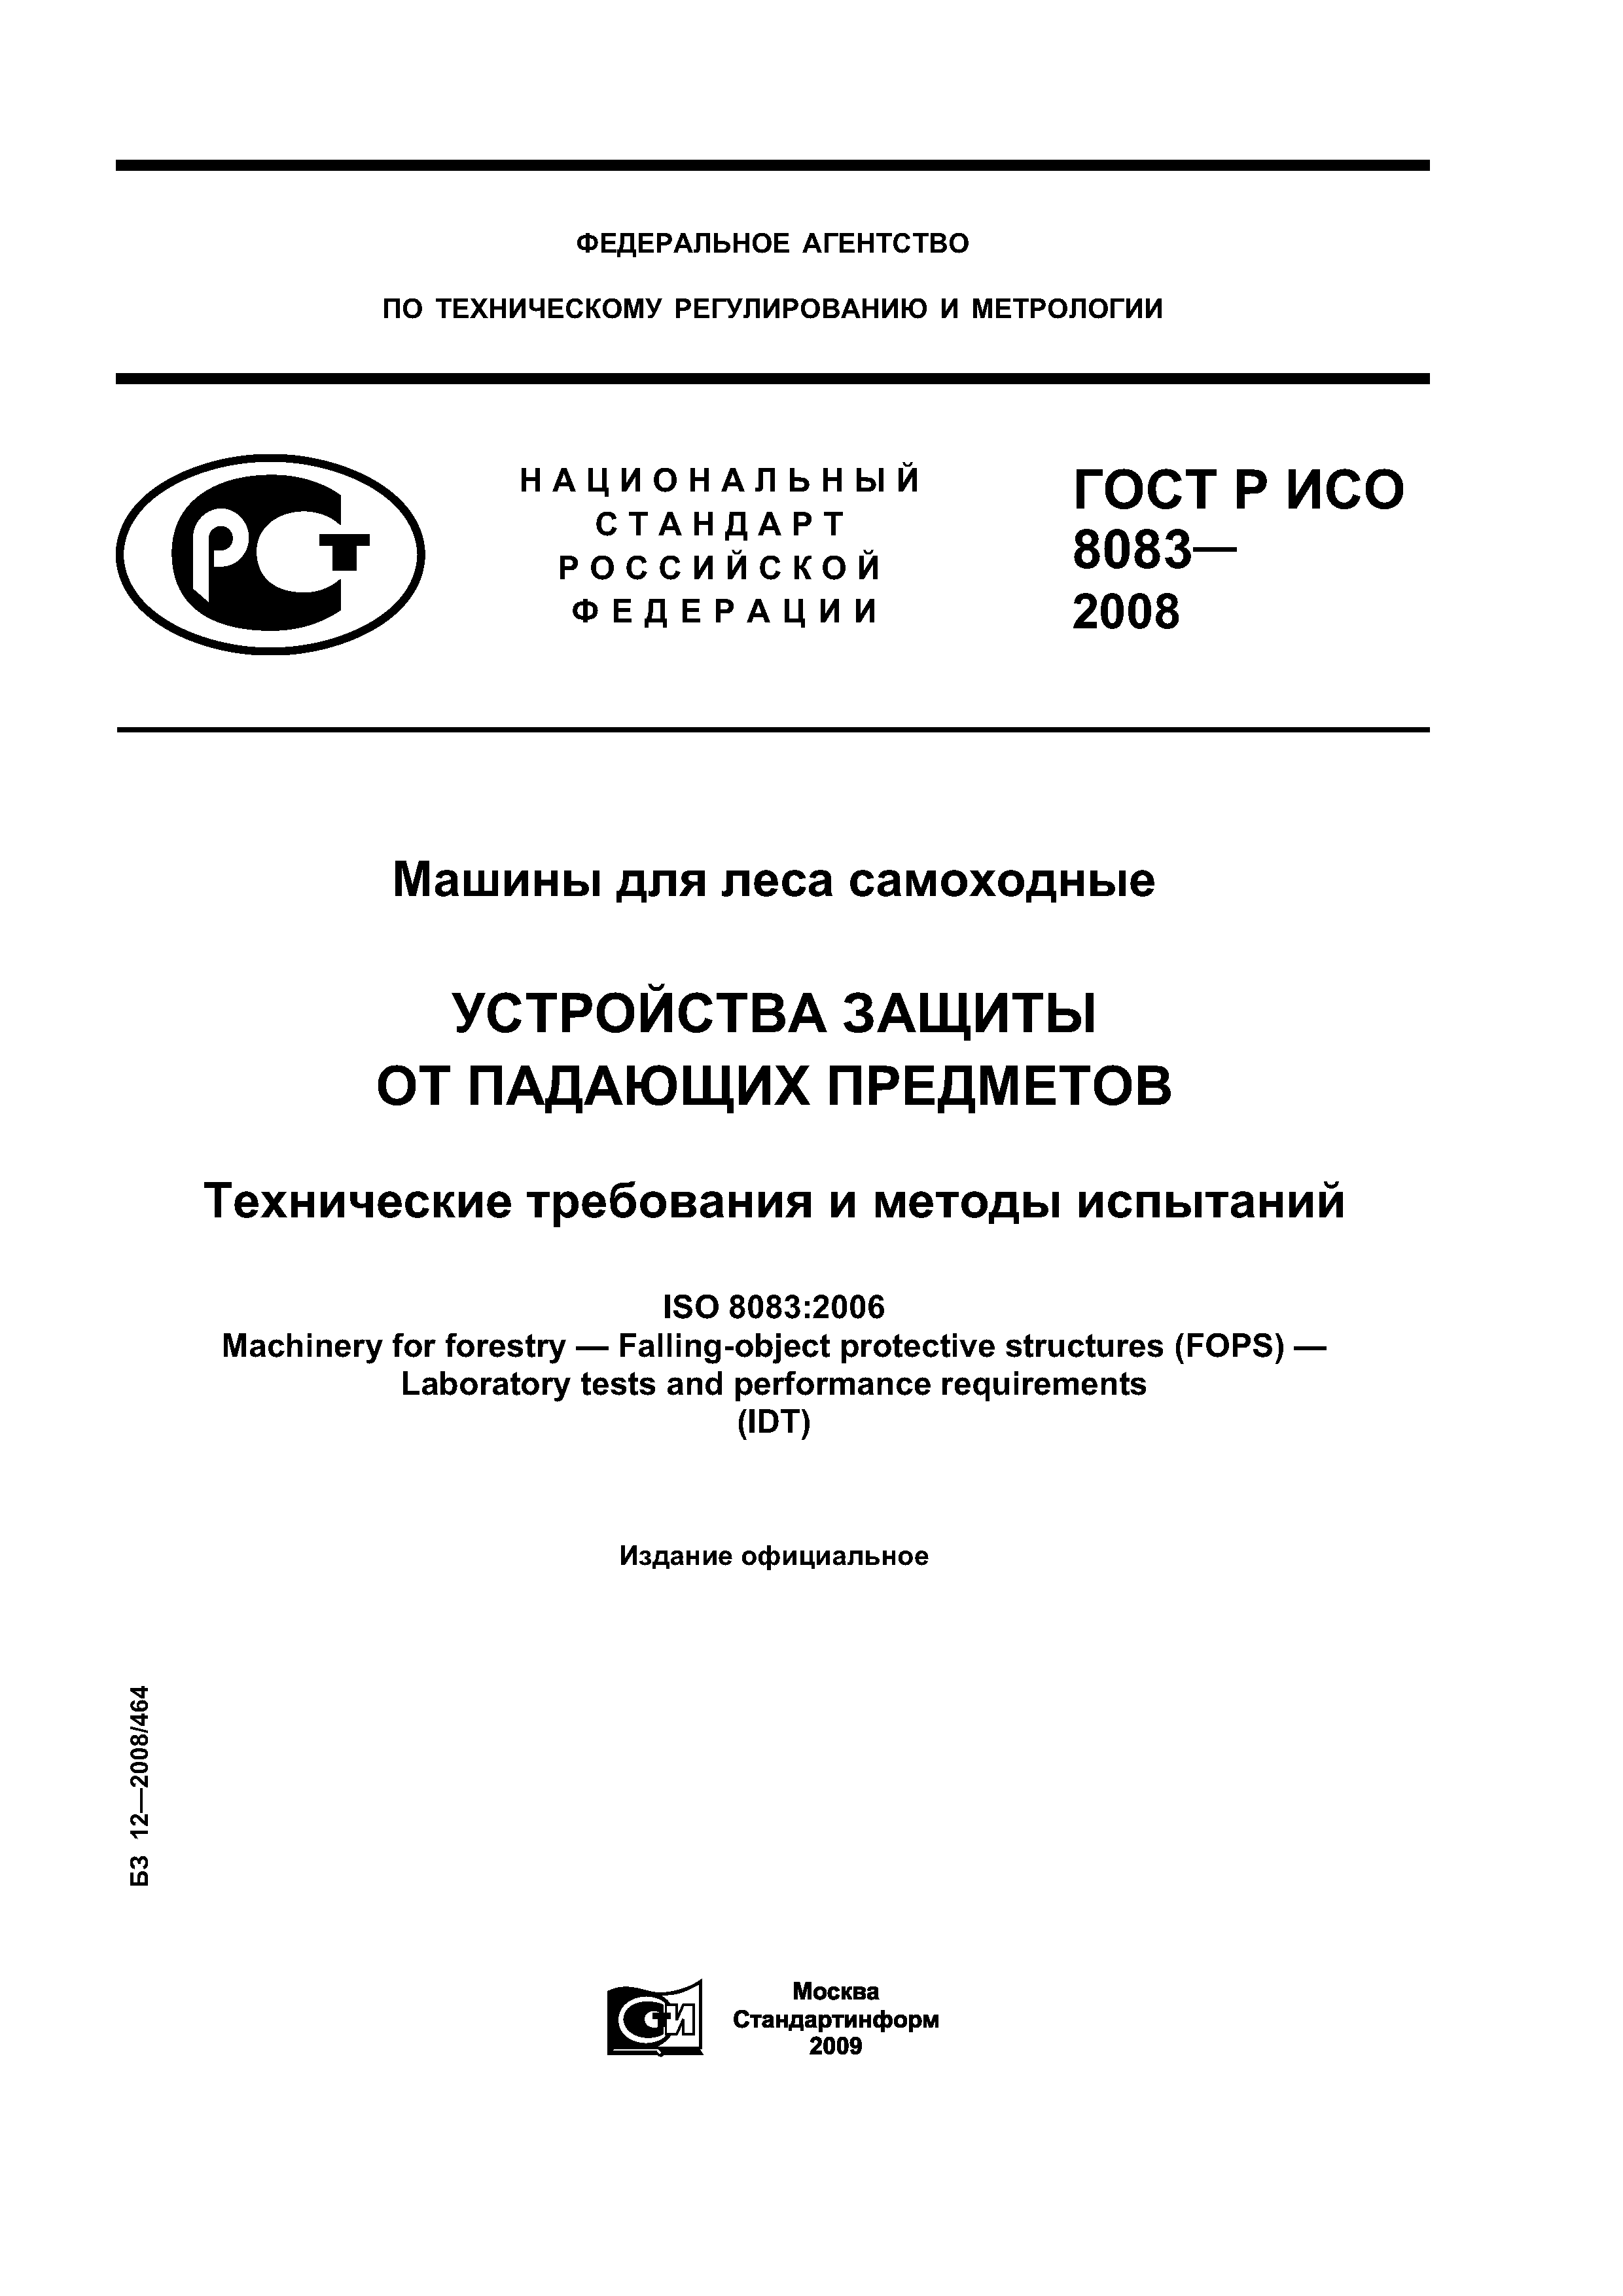 ГОСТ Р ИСО 8083-2008